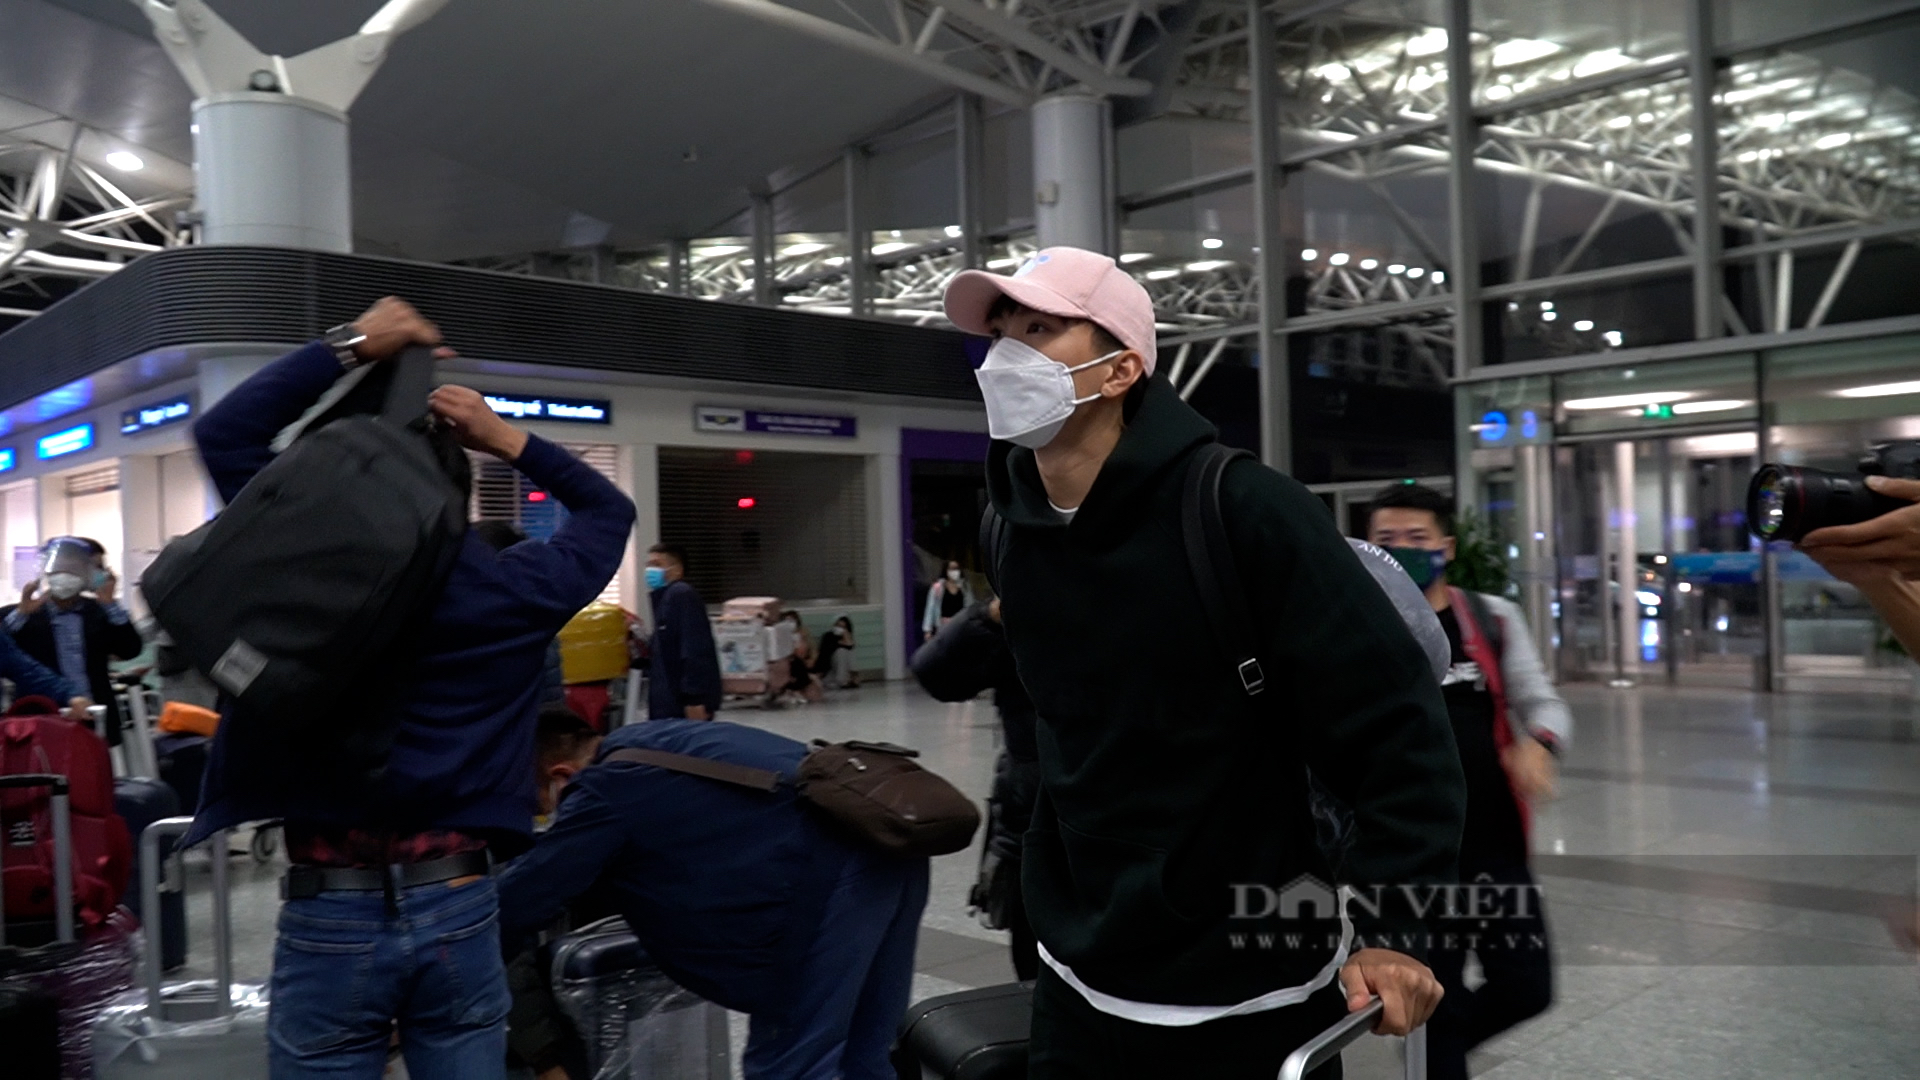 Đoàn Văn Hậu lặng lẽ ra sân bay sang Hàn Quốc chữa trị chấn thương - Ảnh 6.